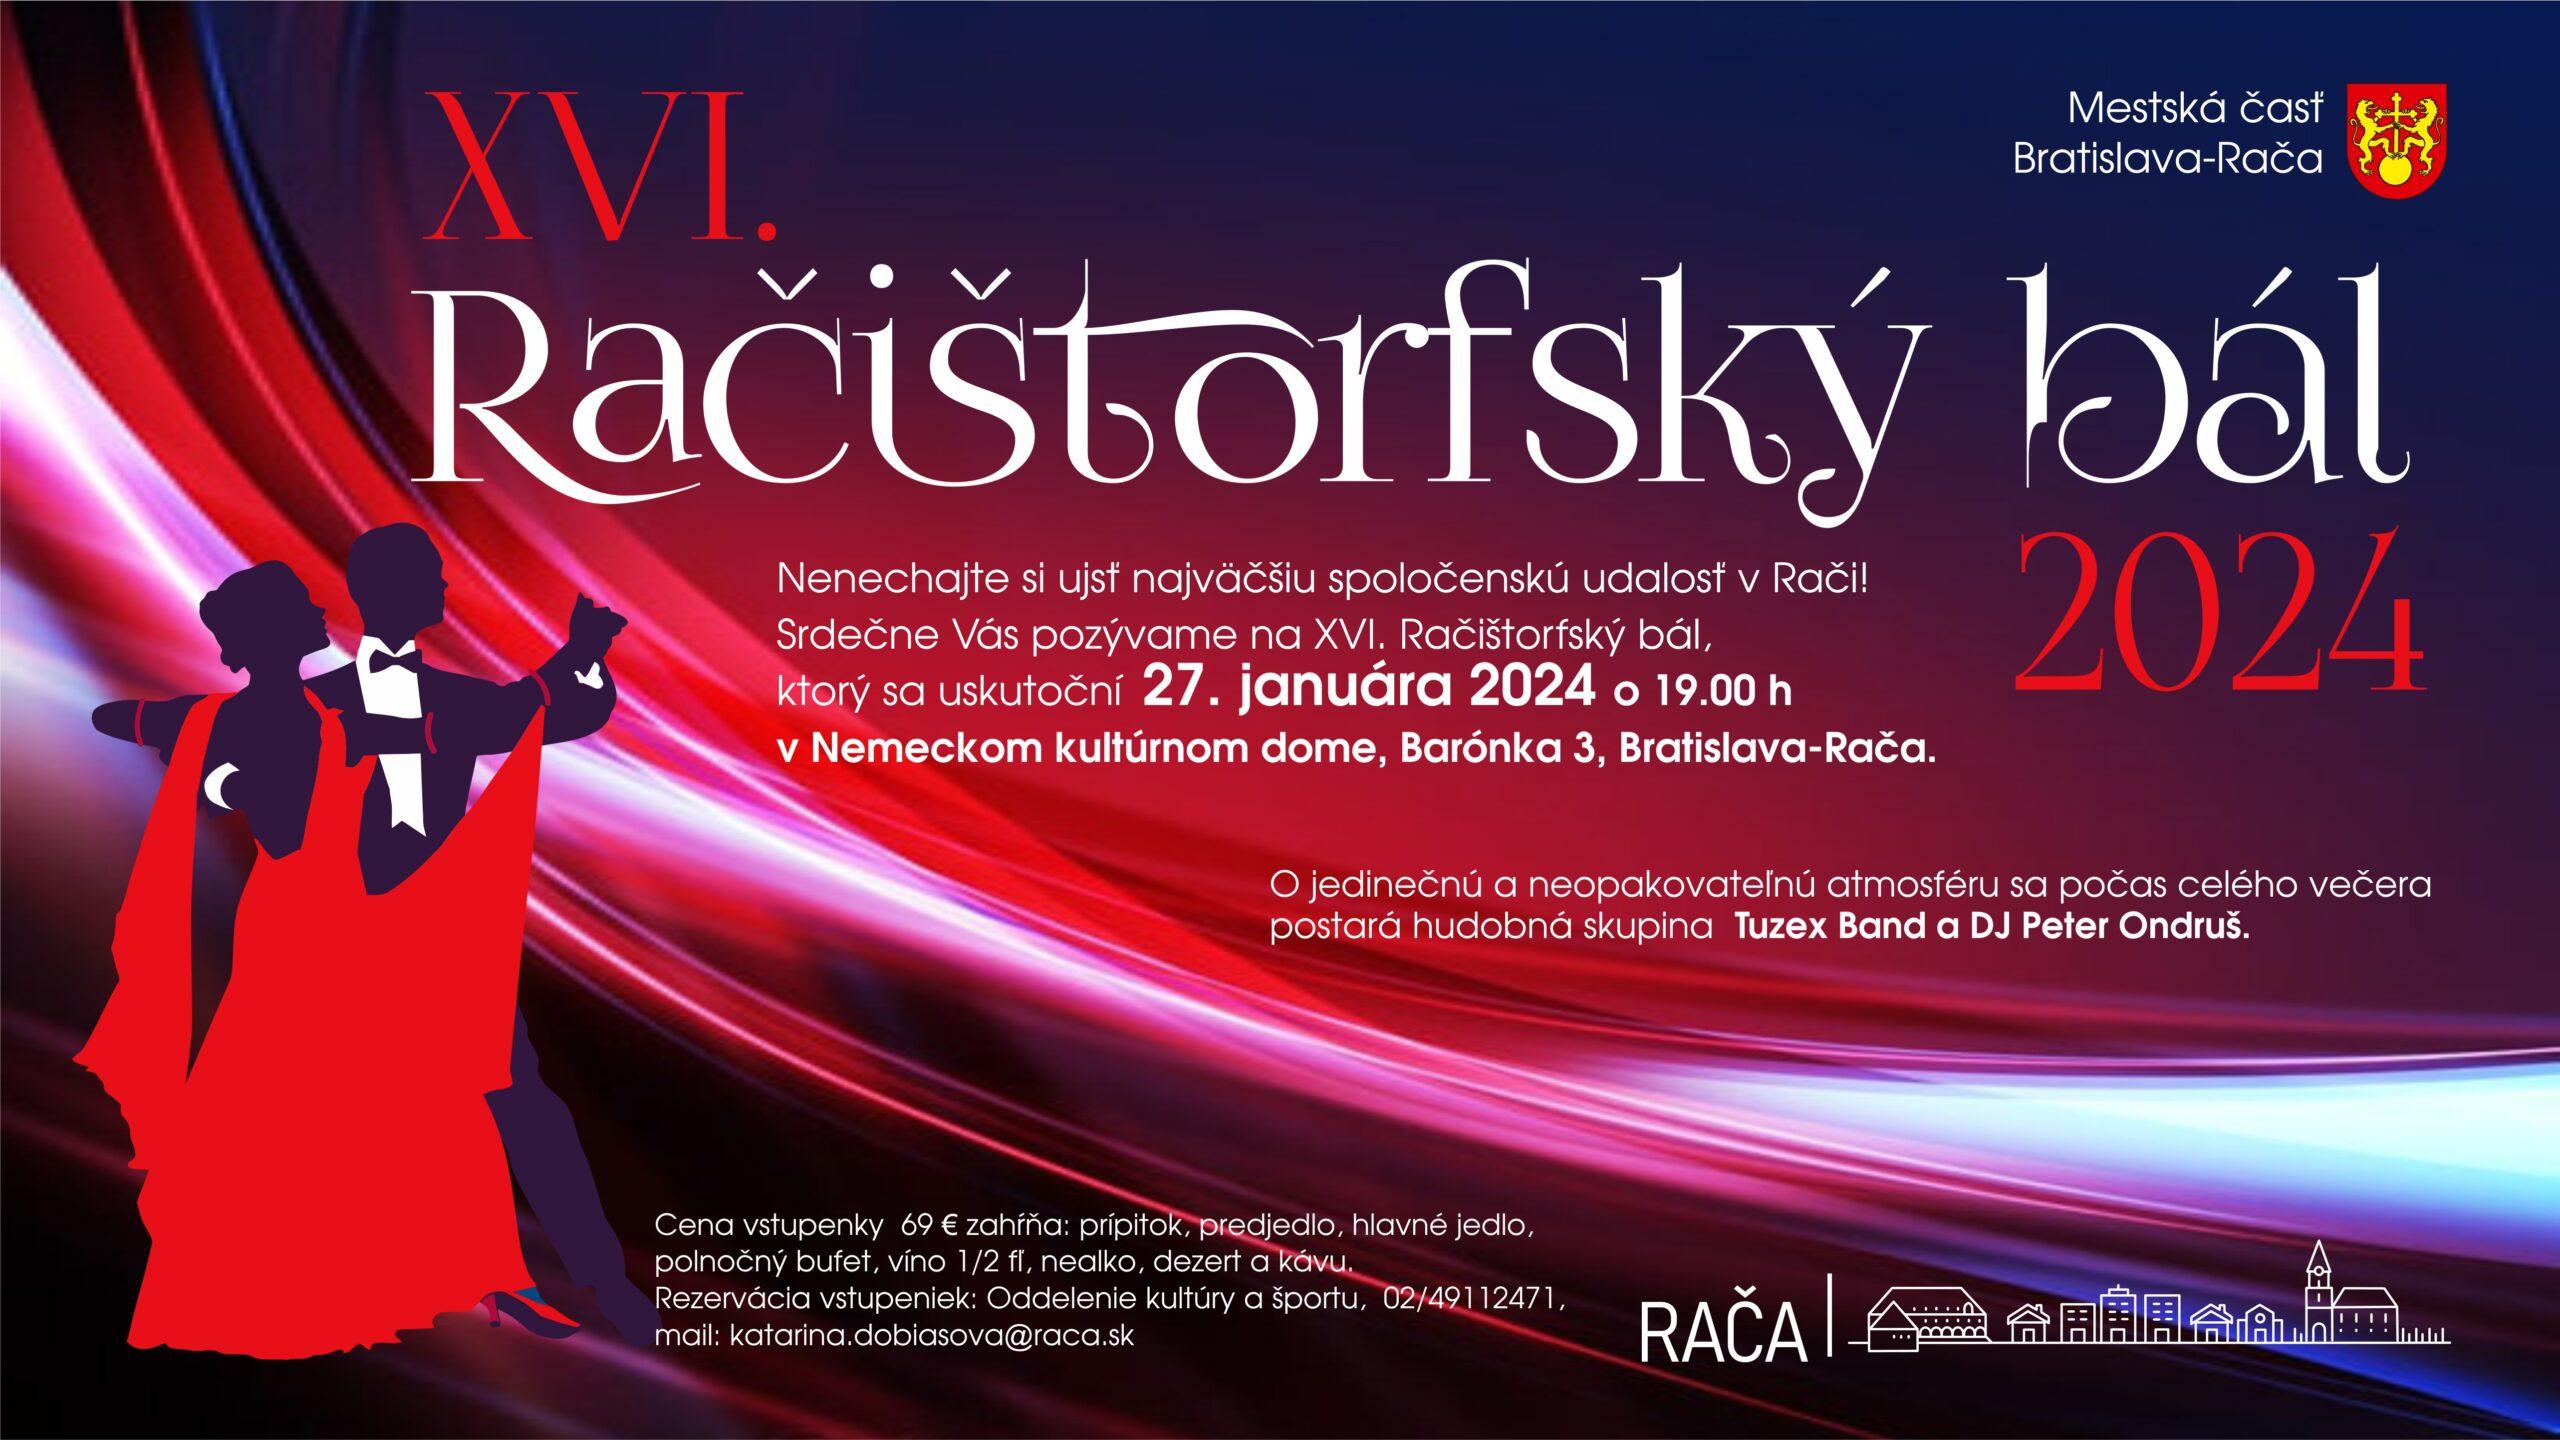 MČ Bratislava-Rača pozýva na XVI. Račištorfský bál 2024